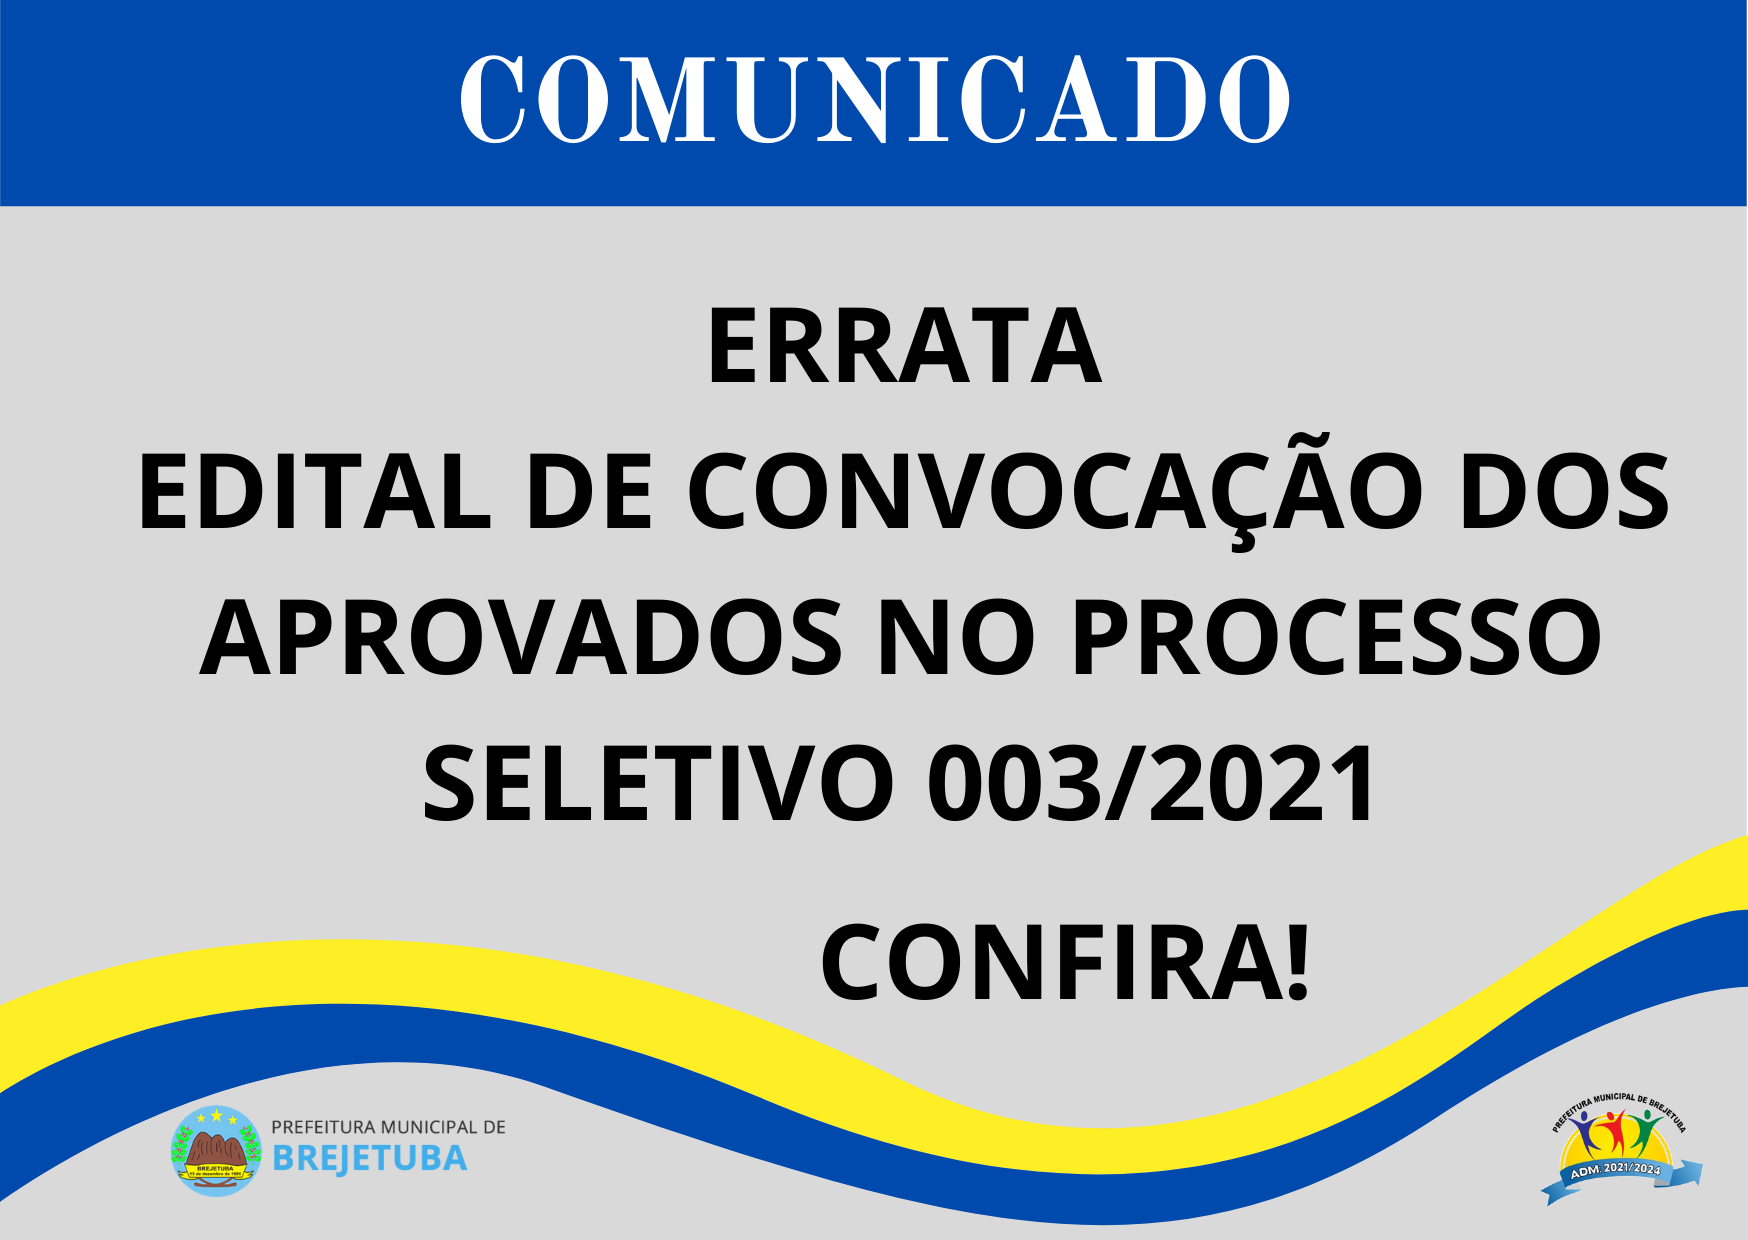 ERRATA - EDITAL DE CONVOCAÇÃO DOS APROVADOS NO PROCESSO SELETIVO Nº 003-2021